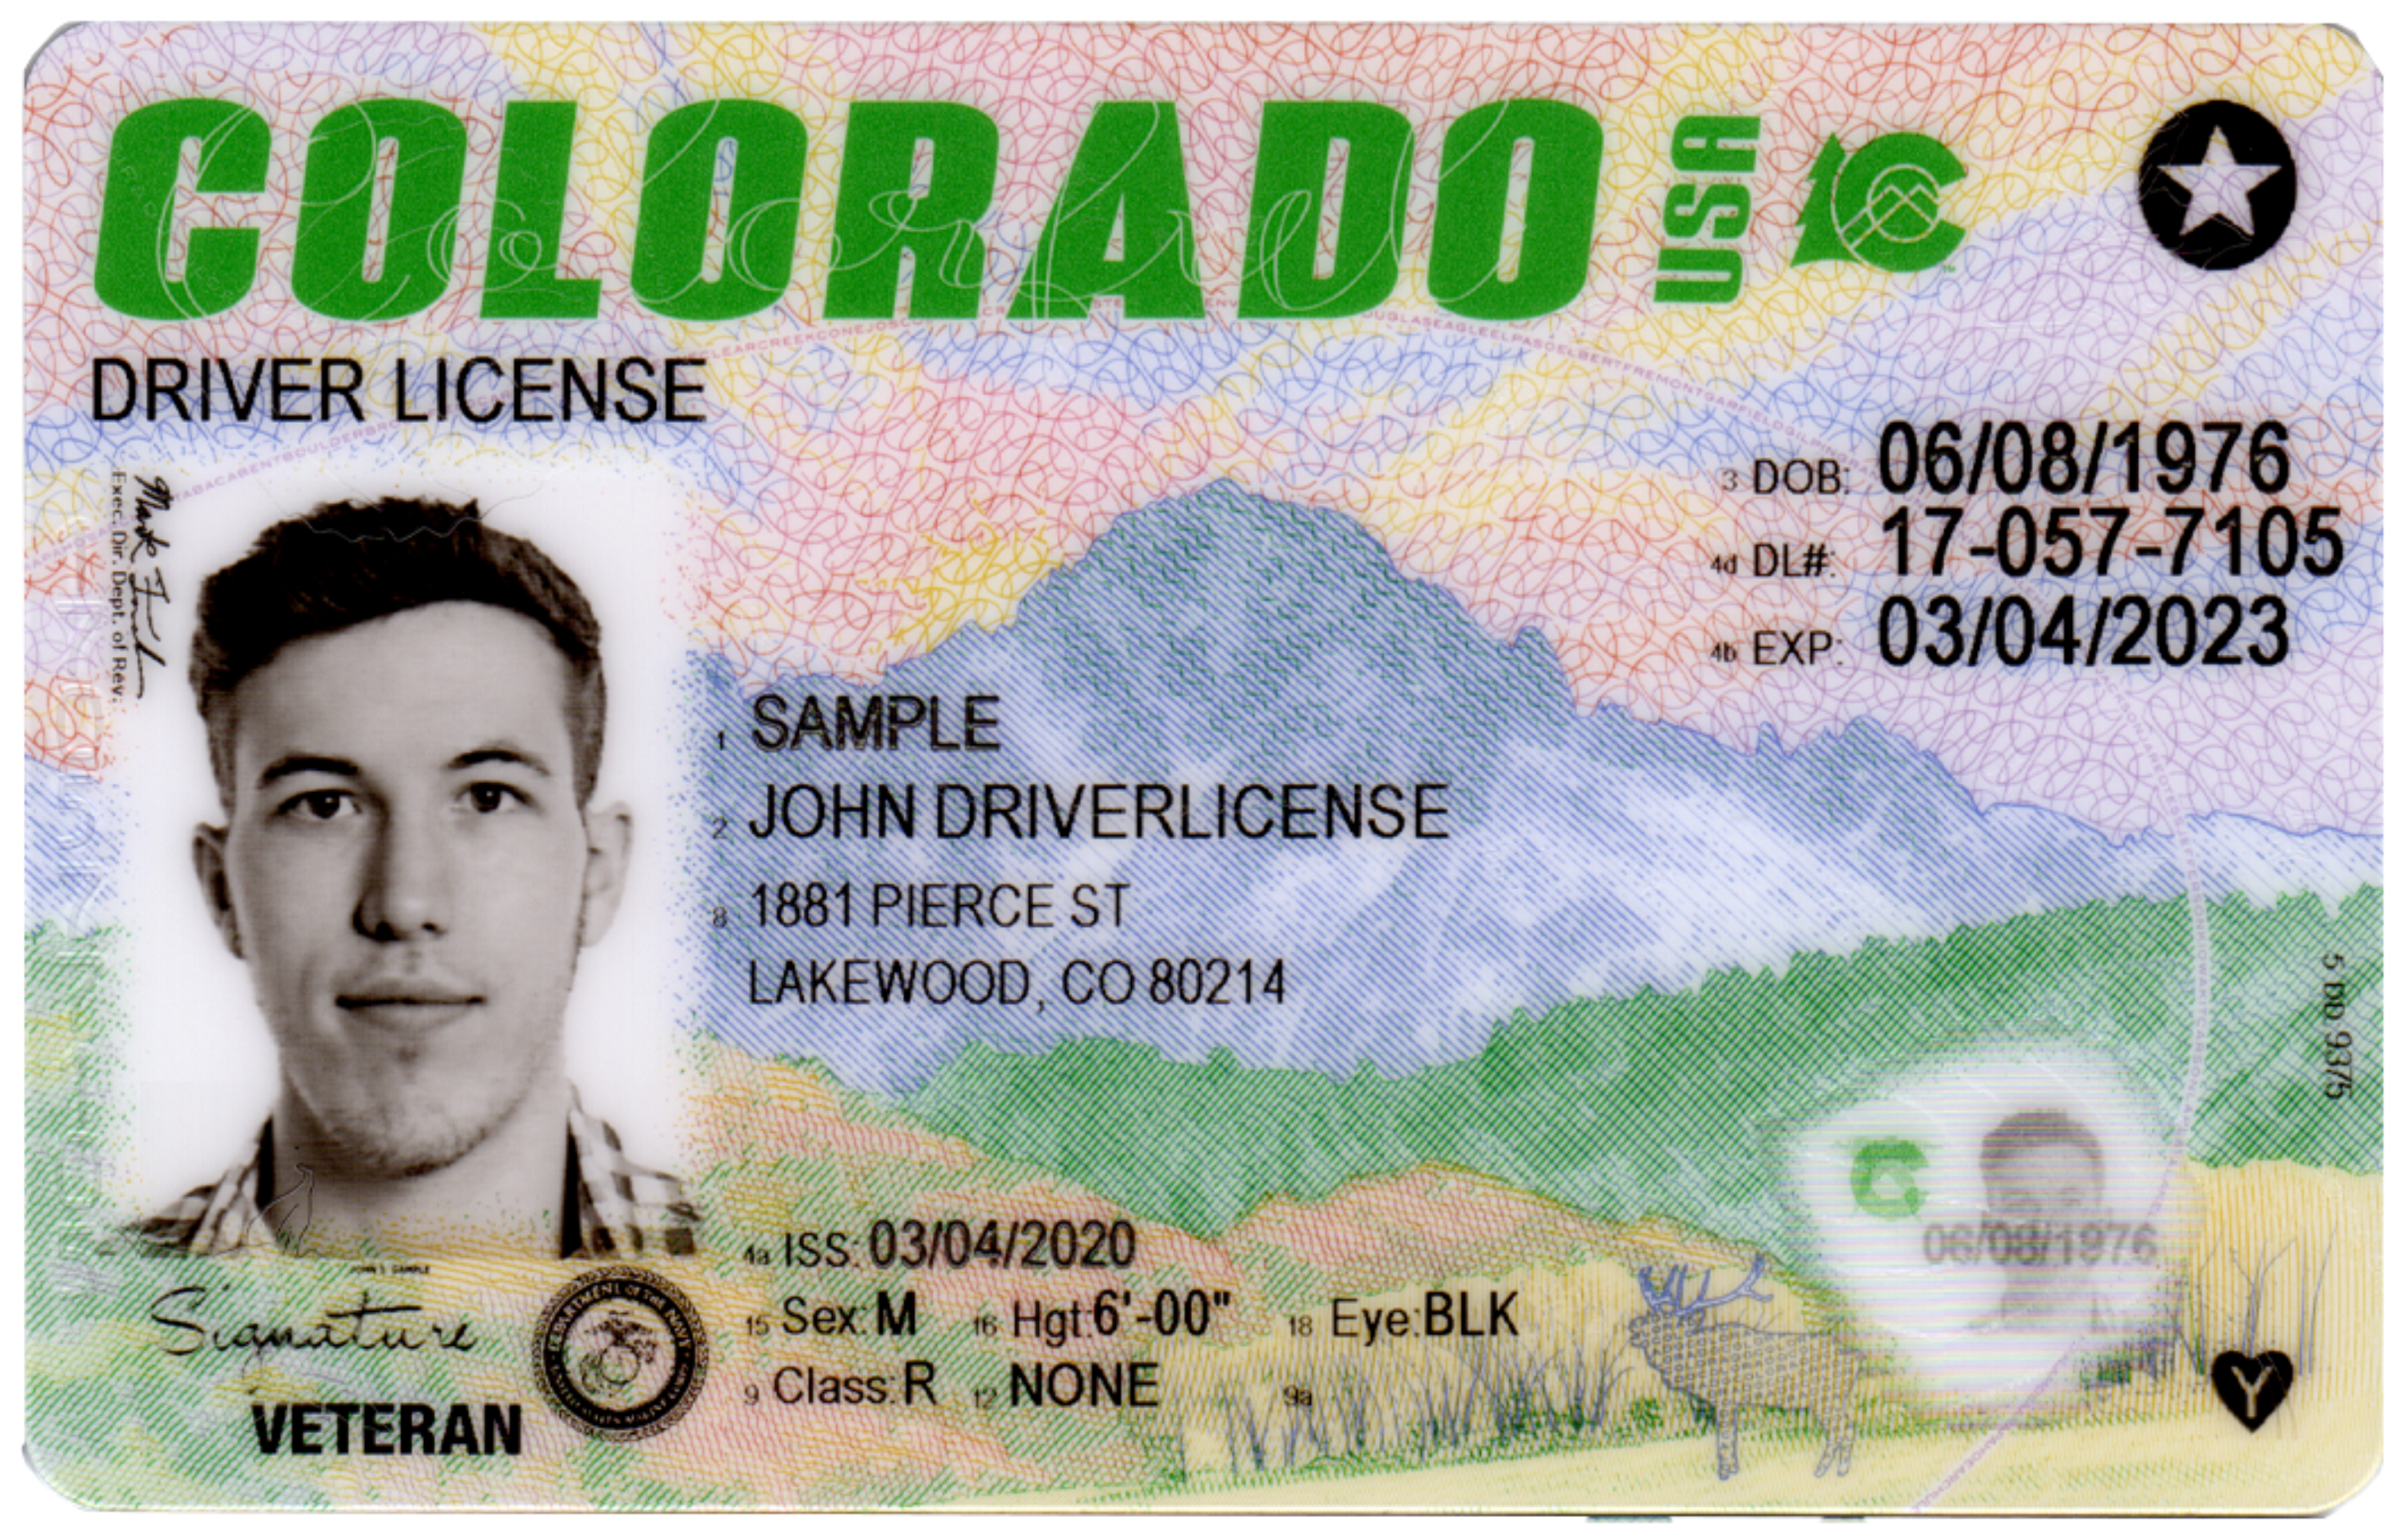 new driver's license colorado